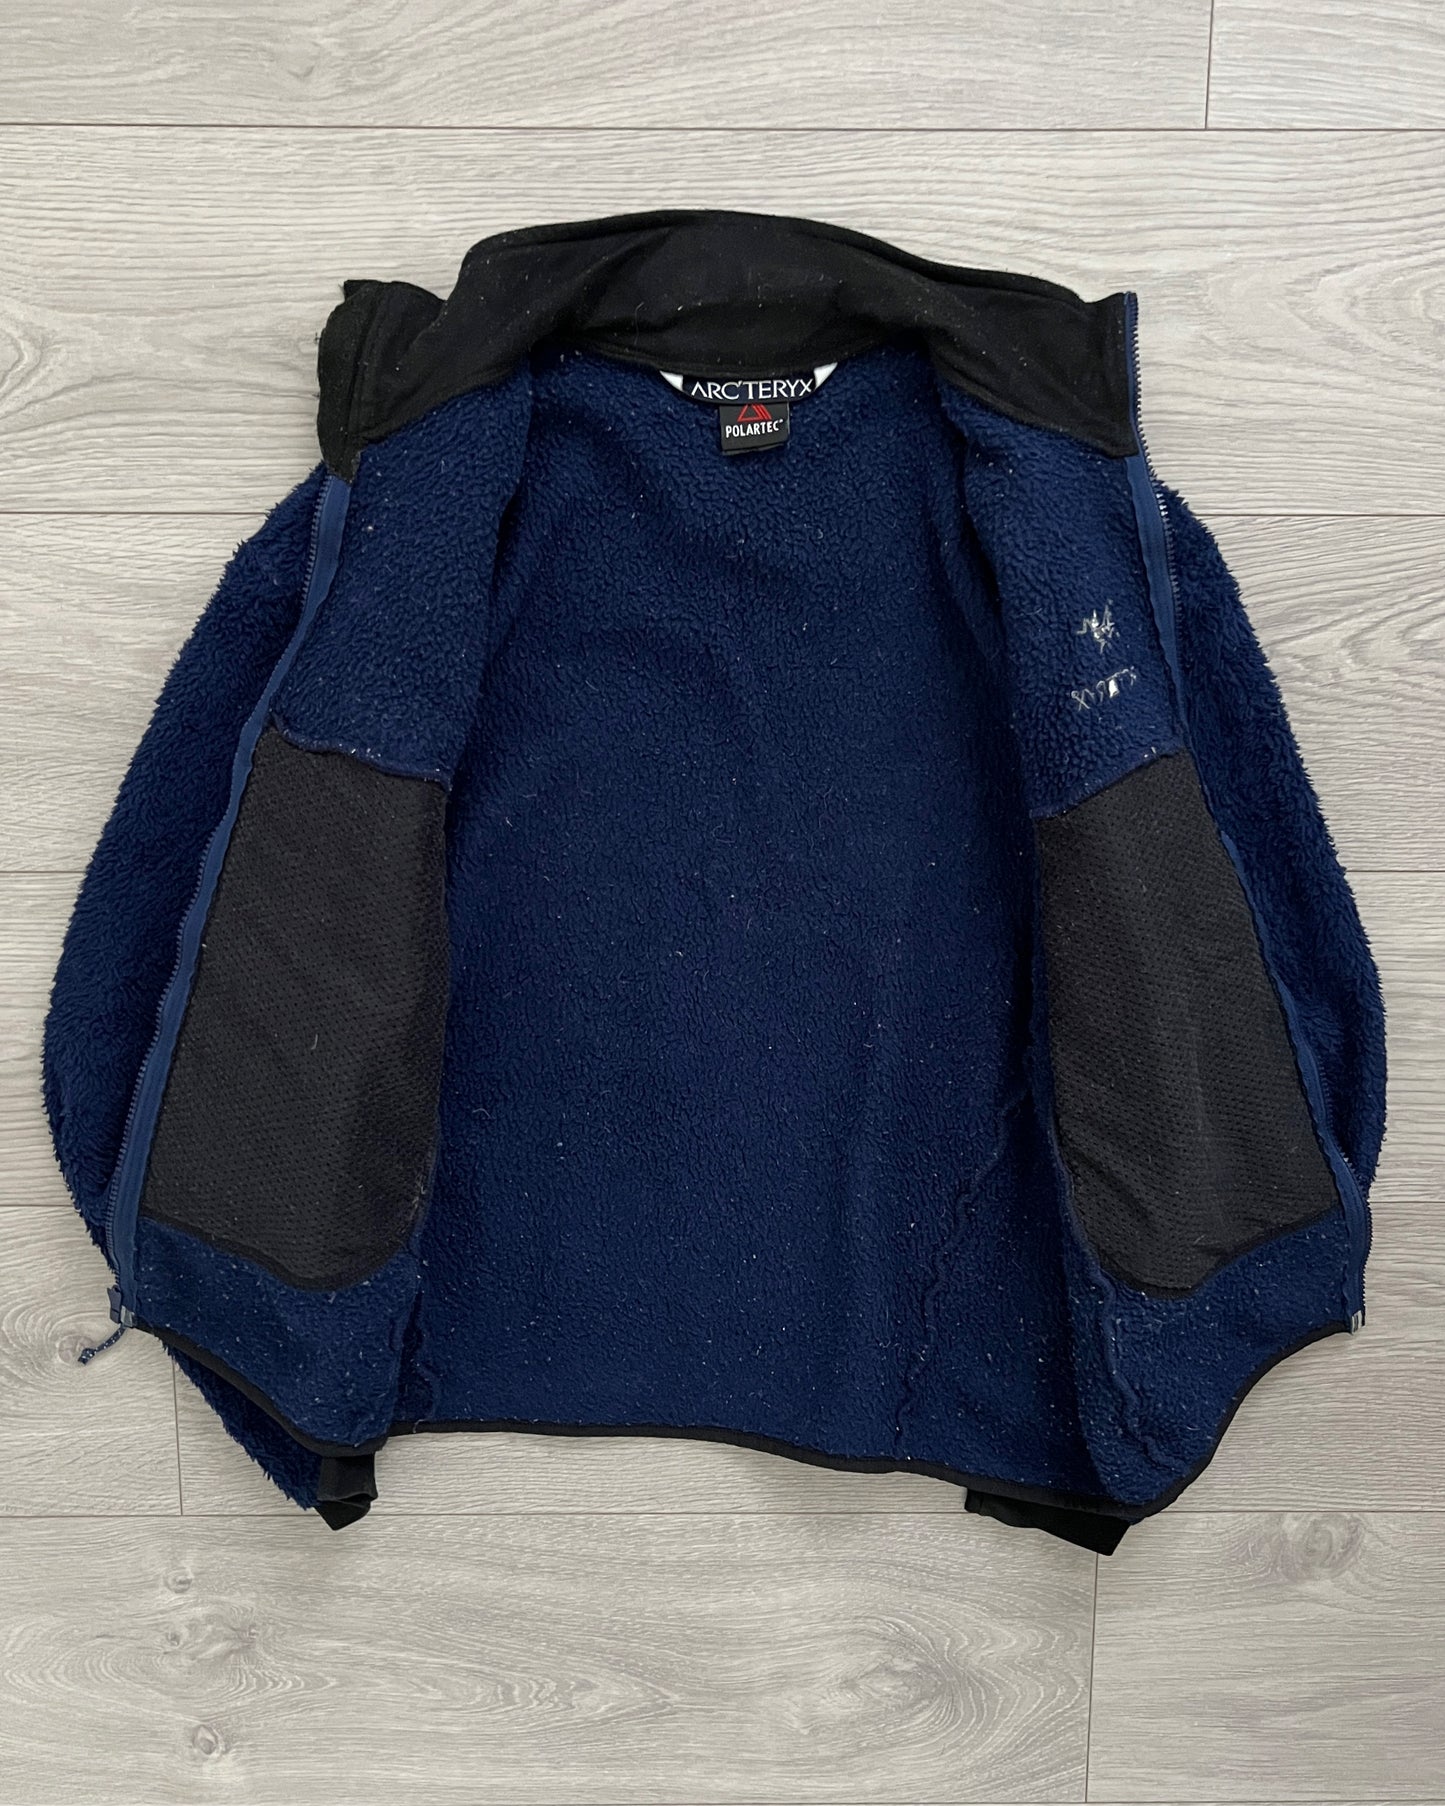 Arcteryx 00s Delta Technical Fleece Jacket - Size M